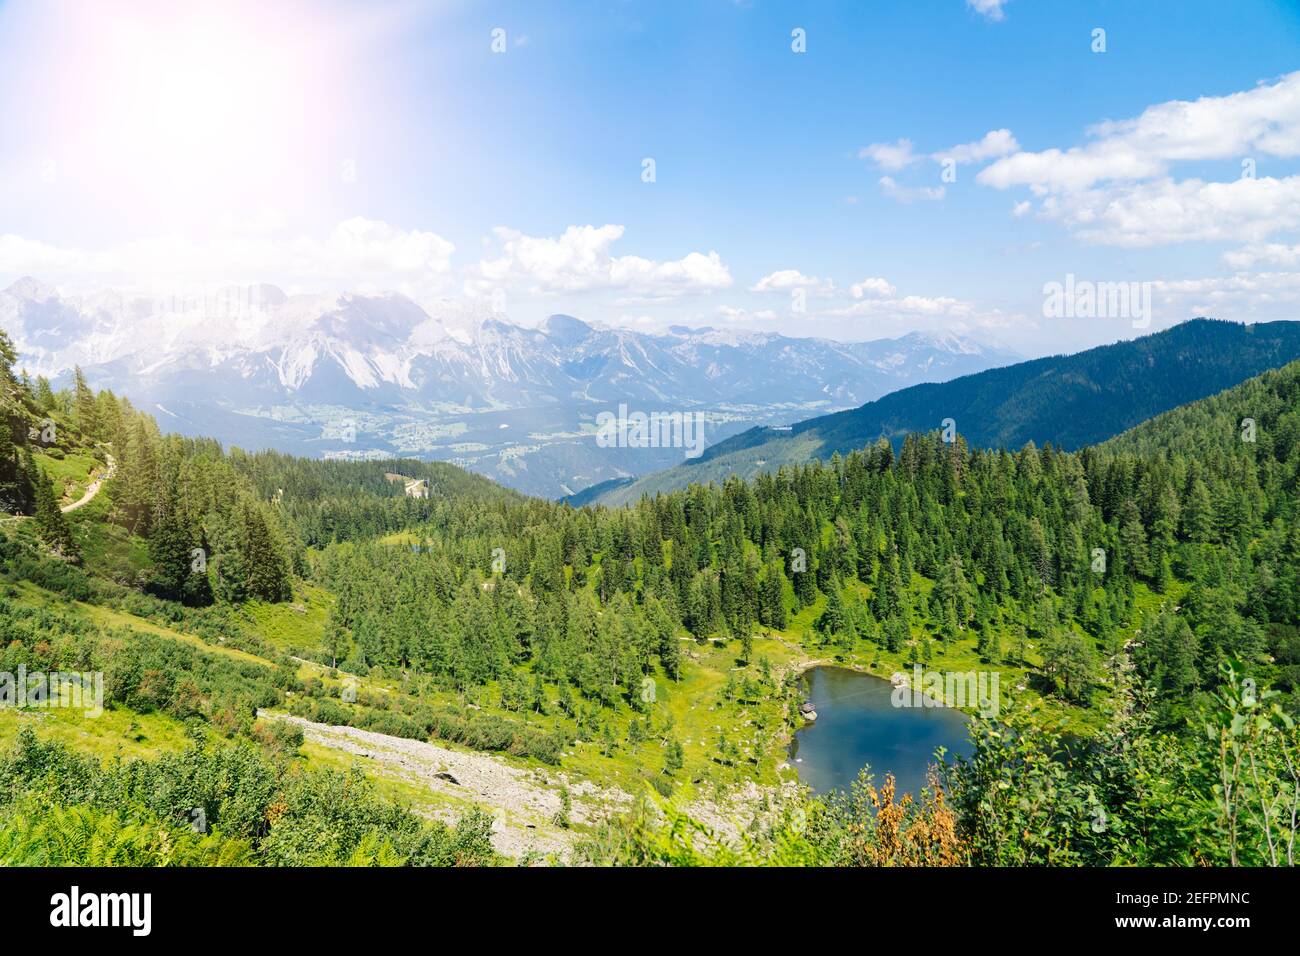 Magische idyllische Landschaft mit See in Bergen in Alpen Europa. Wanderweg auf grünen Hügeln in Alpen. Schöne Felsen und bewundern Sie erstaunliche Aussicht auf Berggipfel. Fantastischer sonniger Tag ist im Bergsee Stockfoto